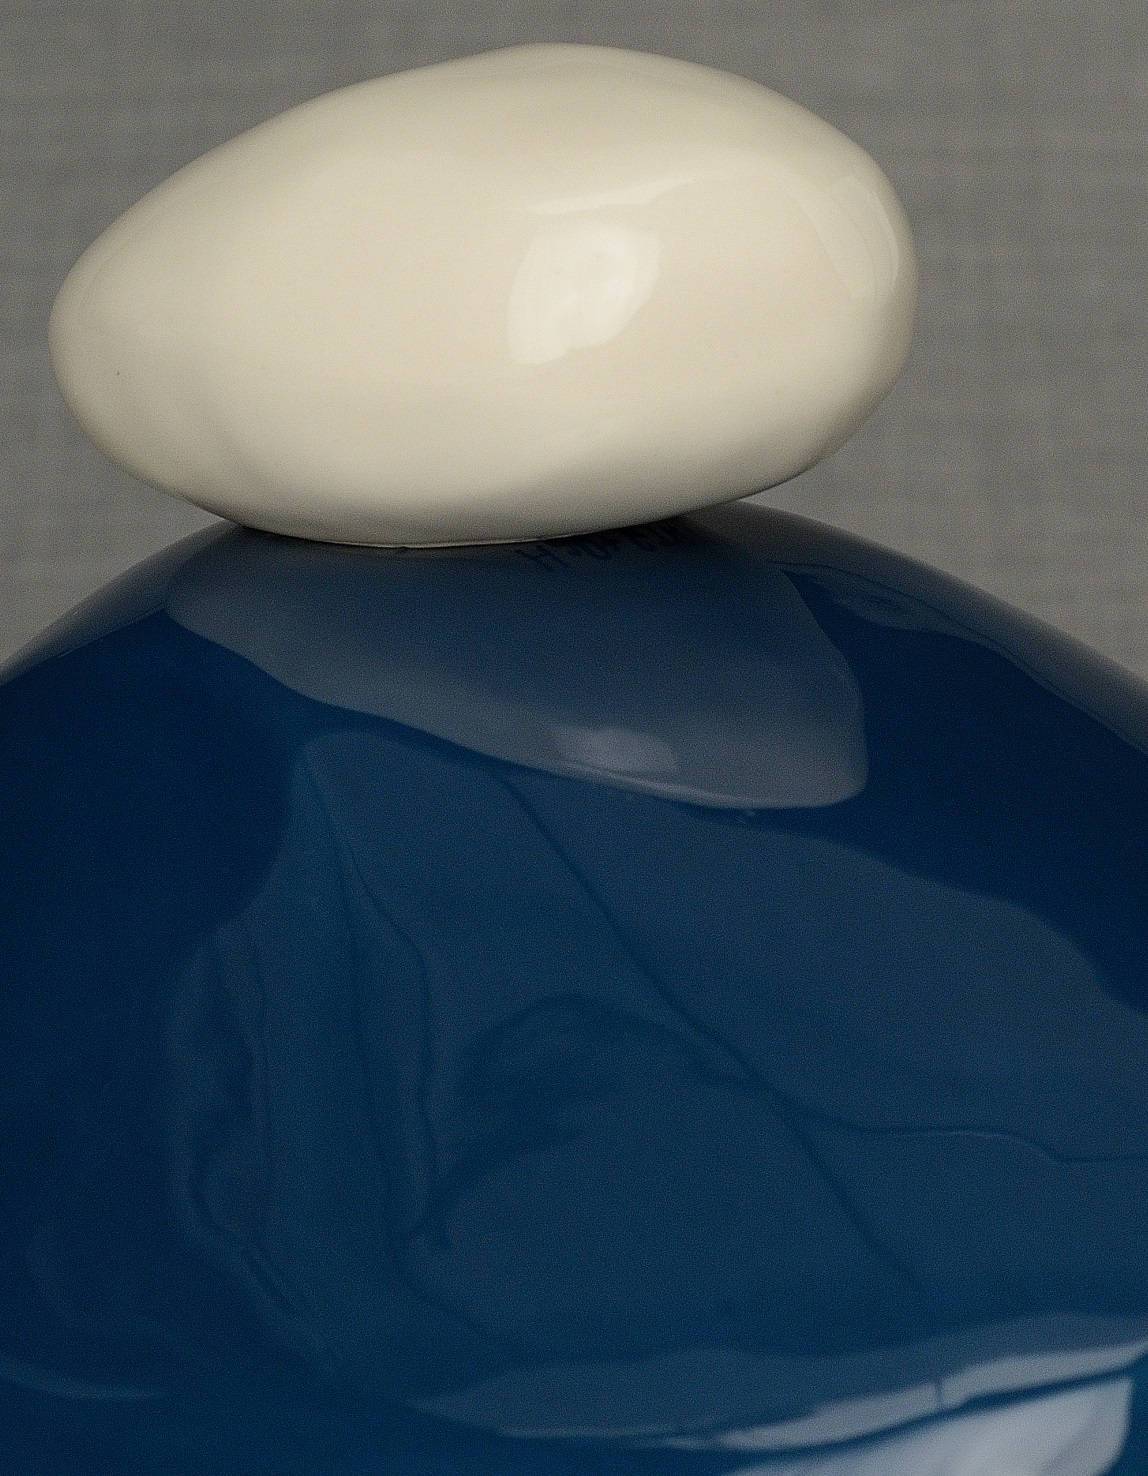 
                  
                    Stone Handmade Cremation Urn for Ashes, size Large/Adult, color Light Cobalt-PulvisArtUrns-Pulvis Art Urns
                  
                